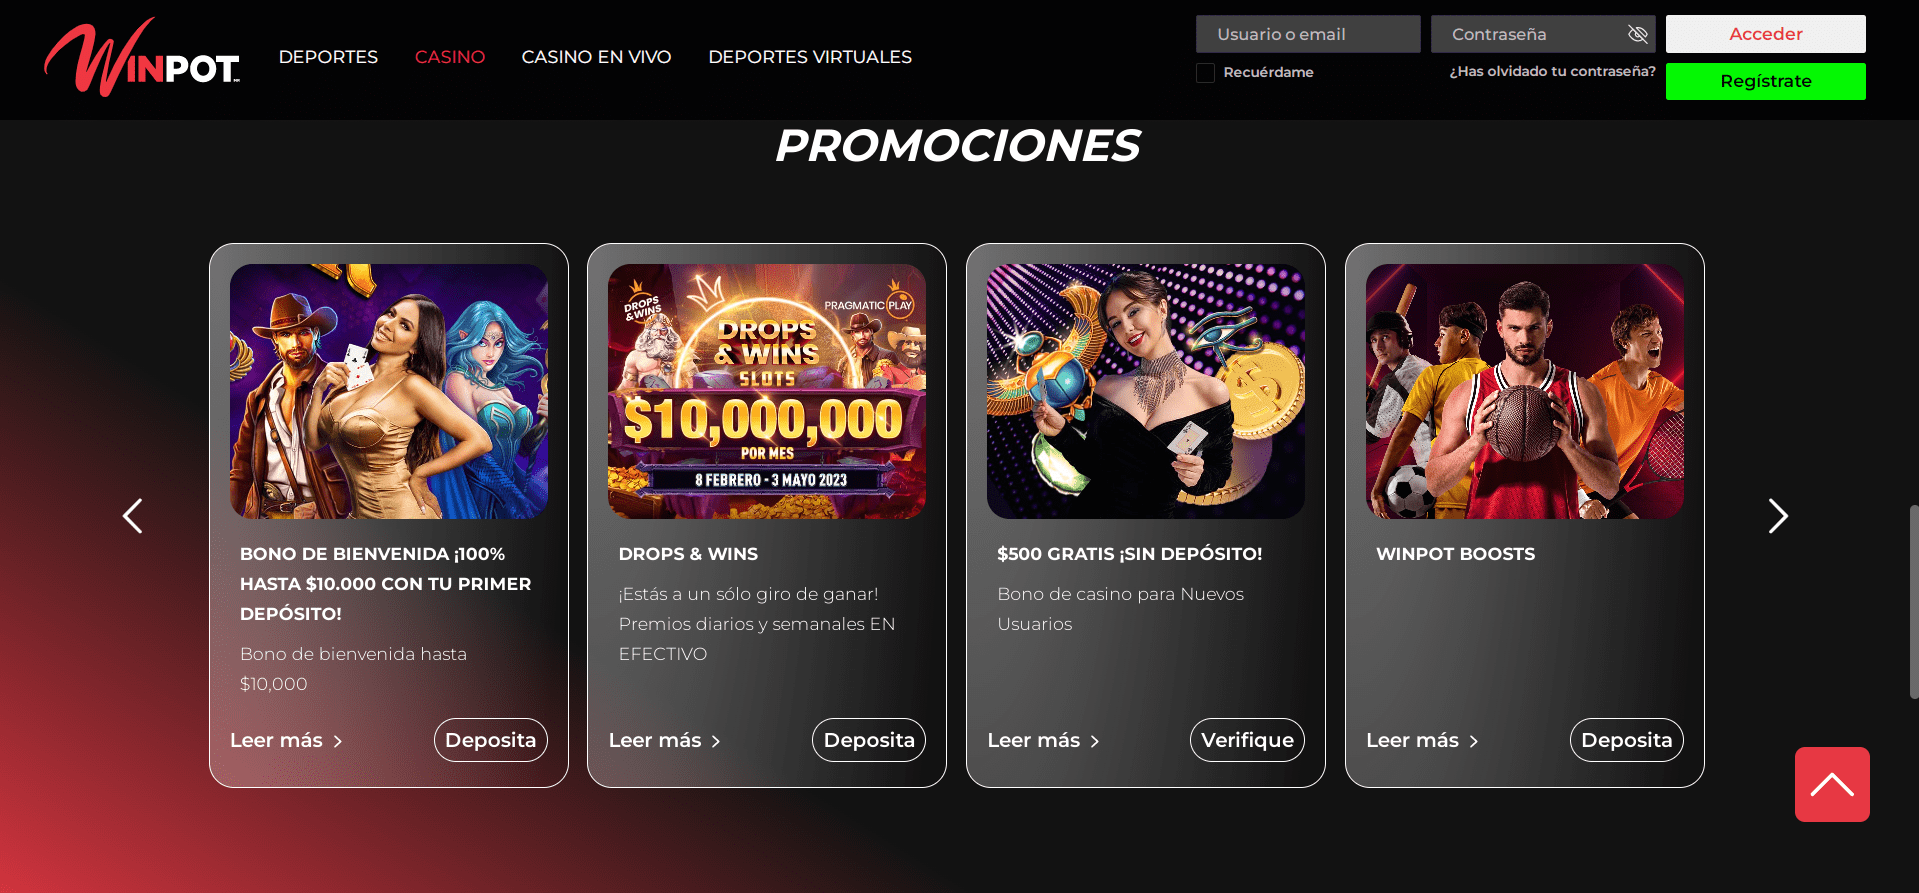 Promociones de Winpot Casino MX